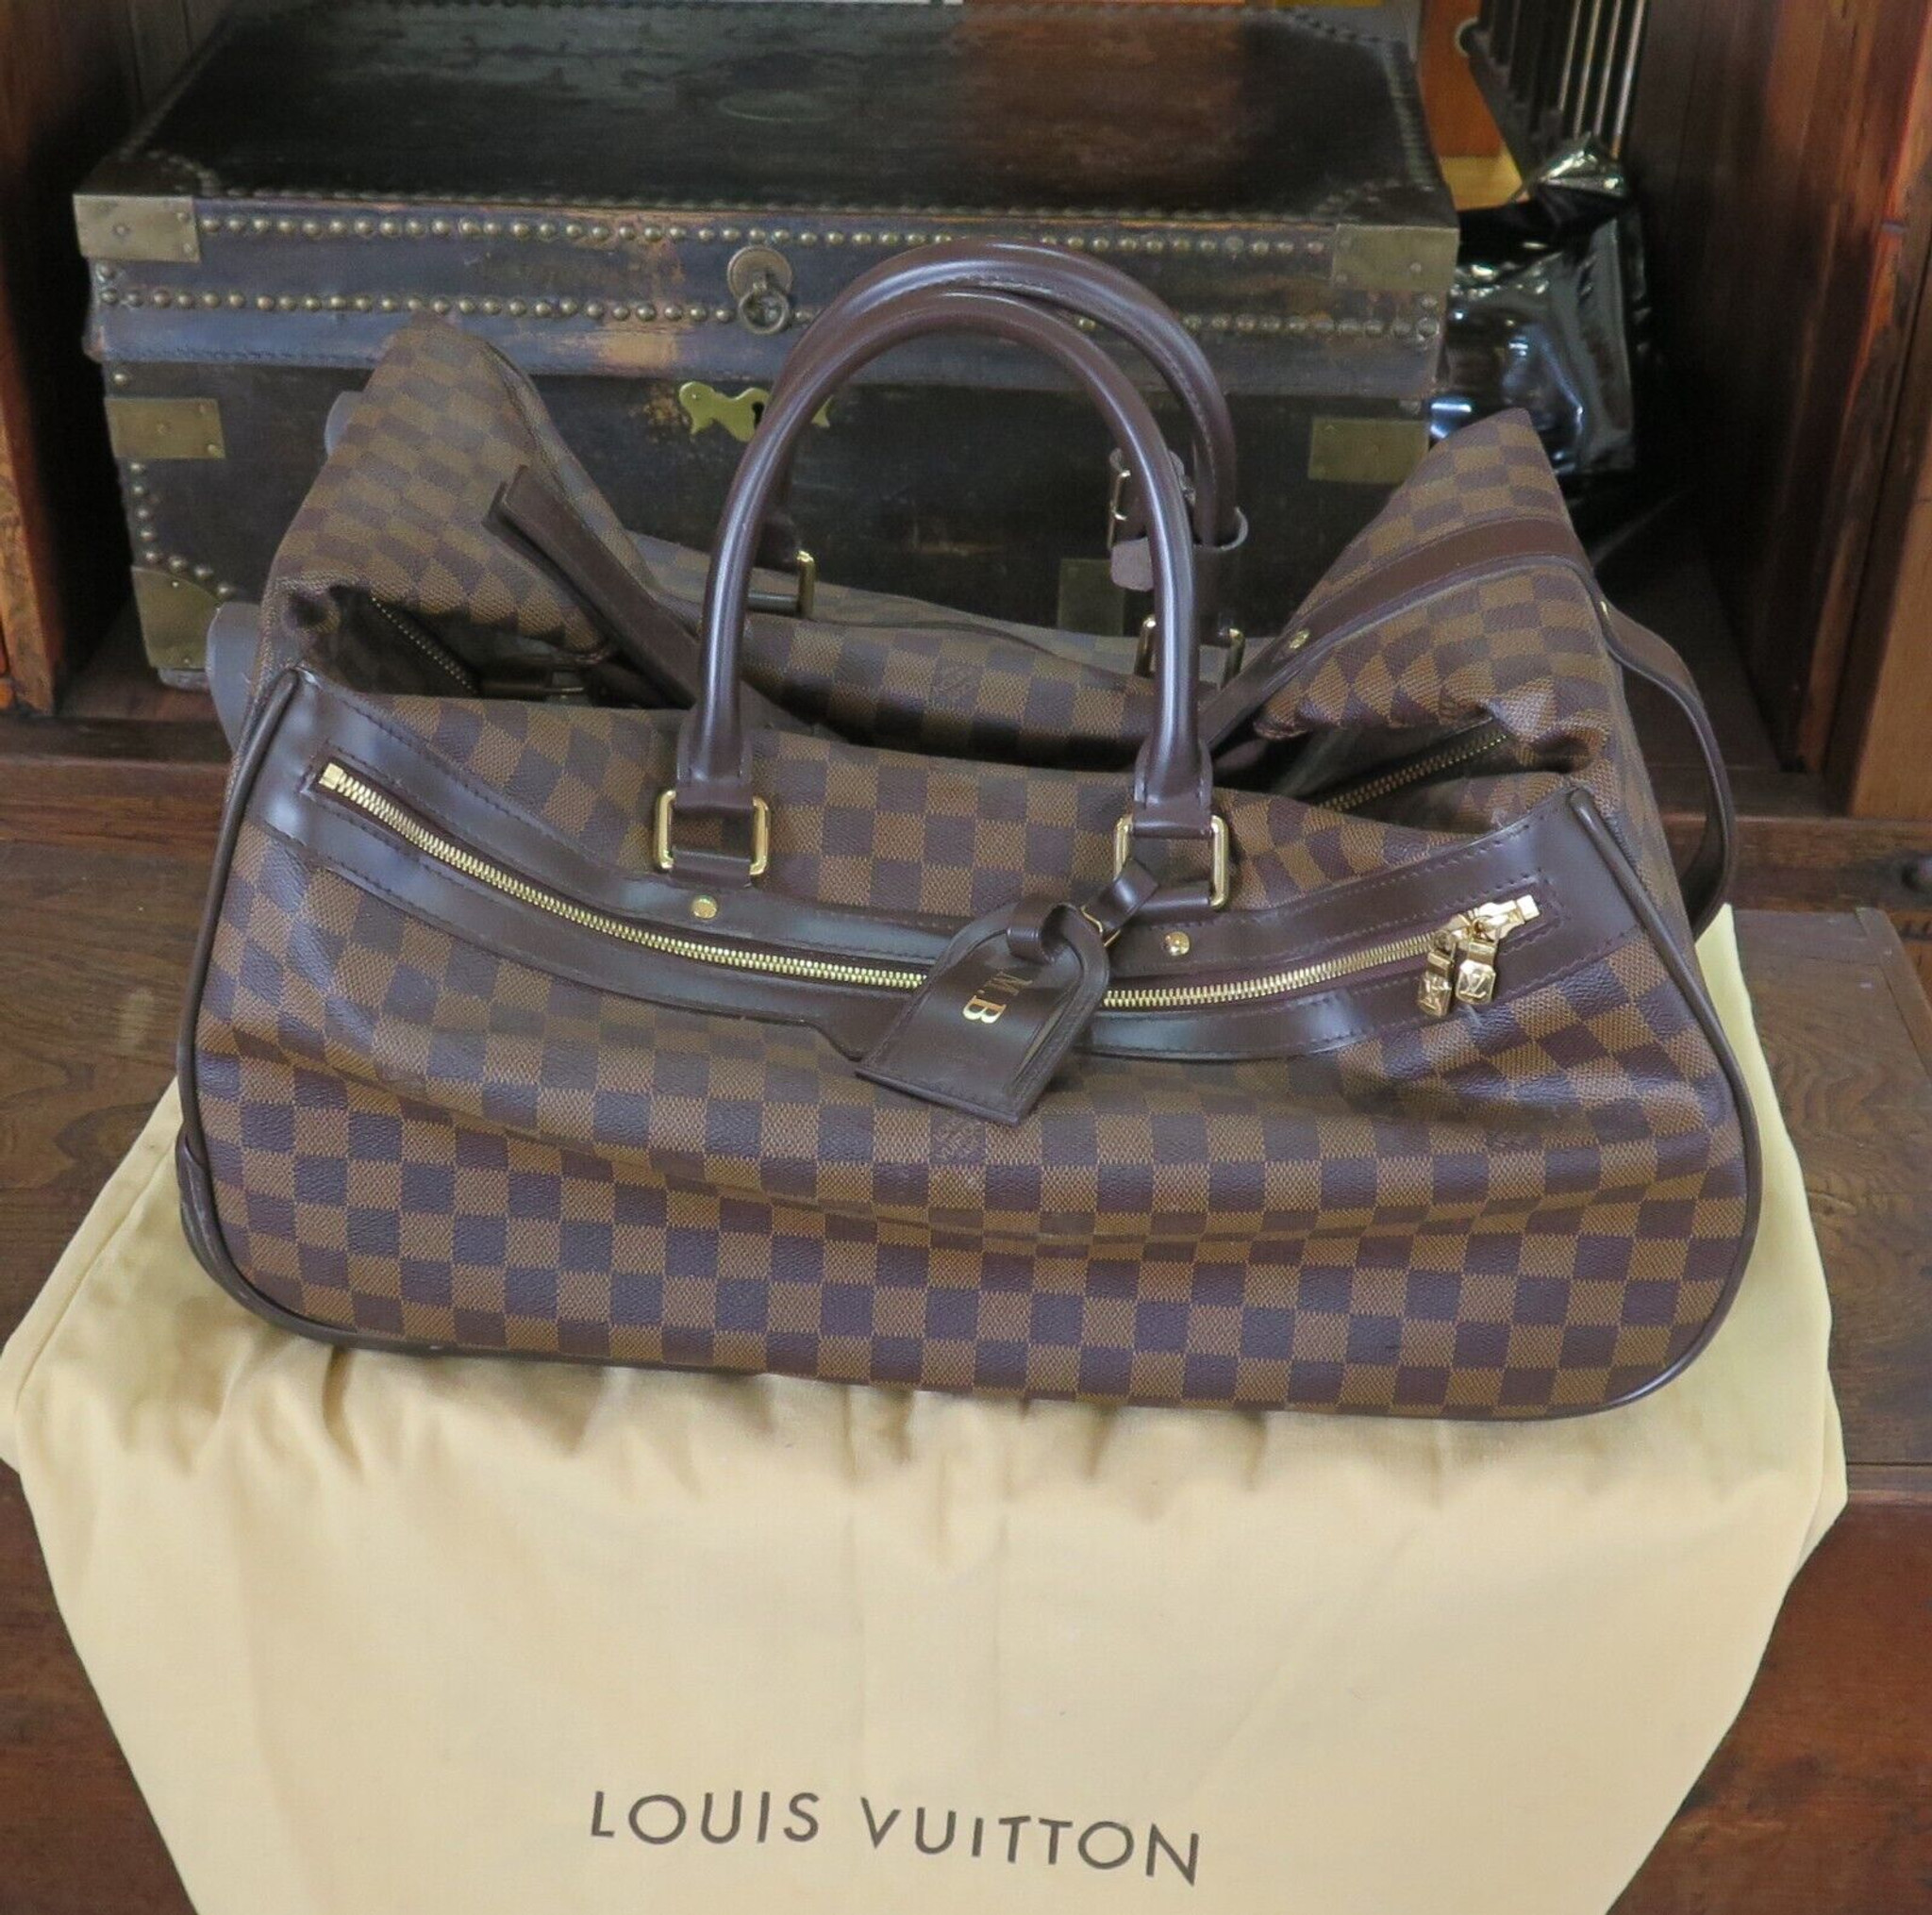 Louis Vuitton Damier Ebene Eole 50 Travel Bag / Suitcase - Harrington & Co.